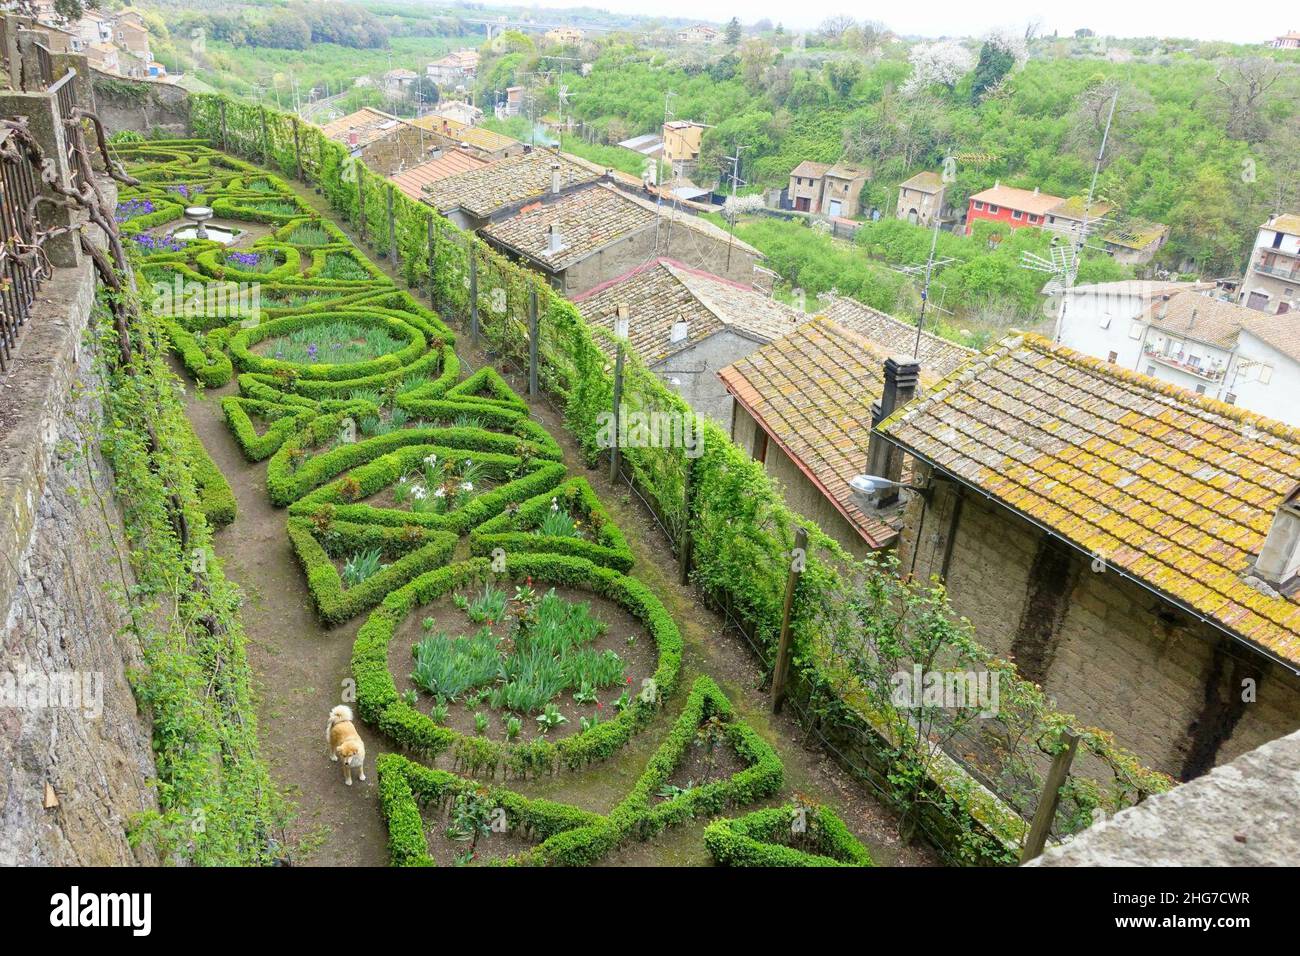 Side garden - Castello Ruspoli - Vignanello, Italy Stock Photo